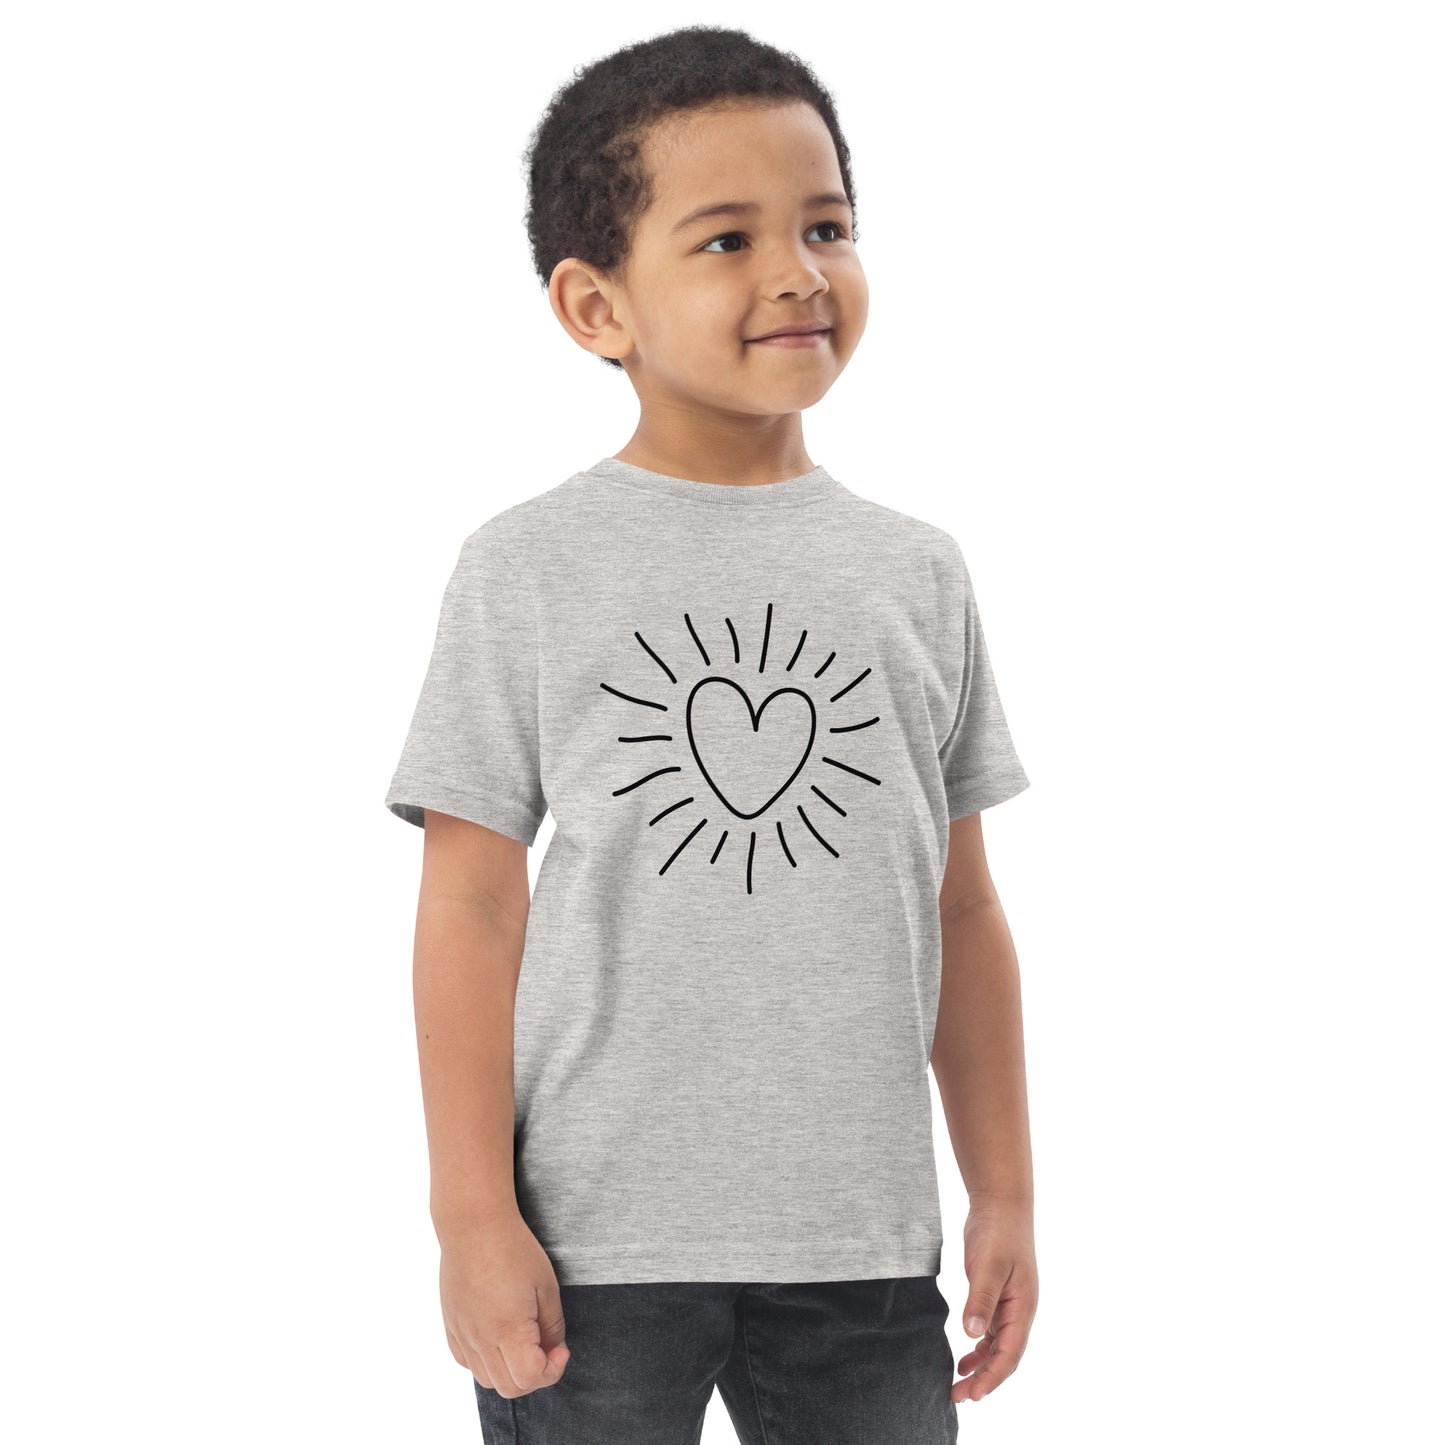 Toddler jersey t-shirt - heart